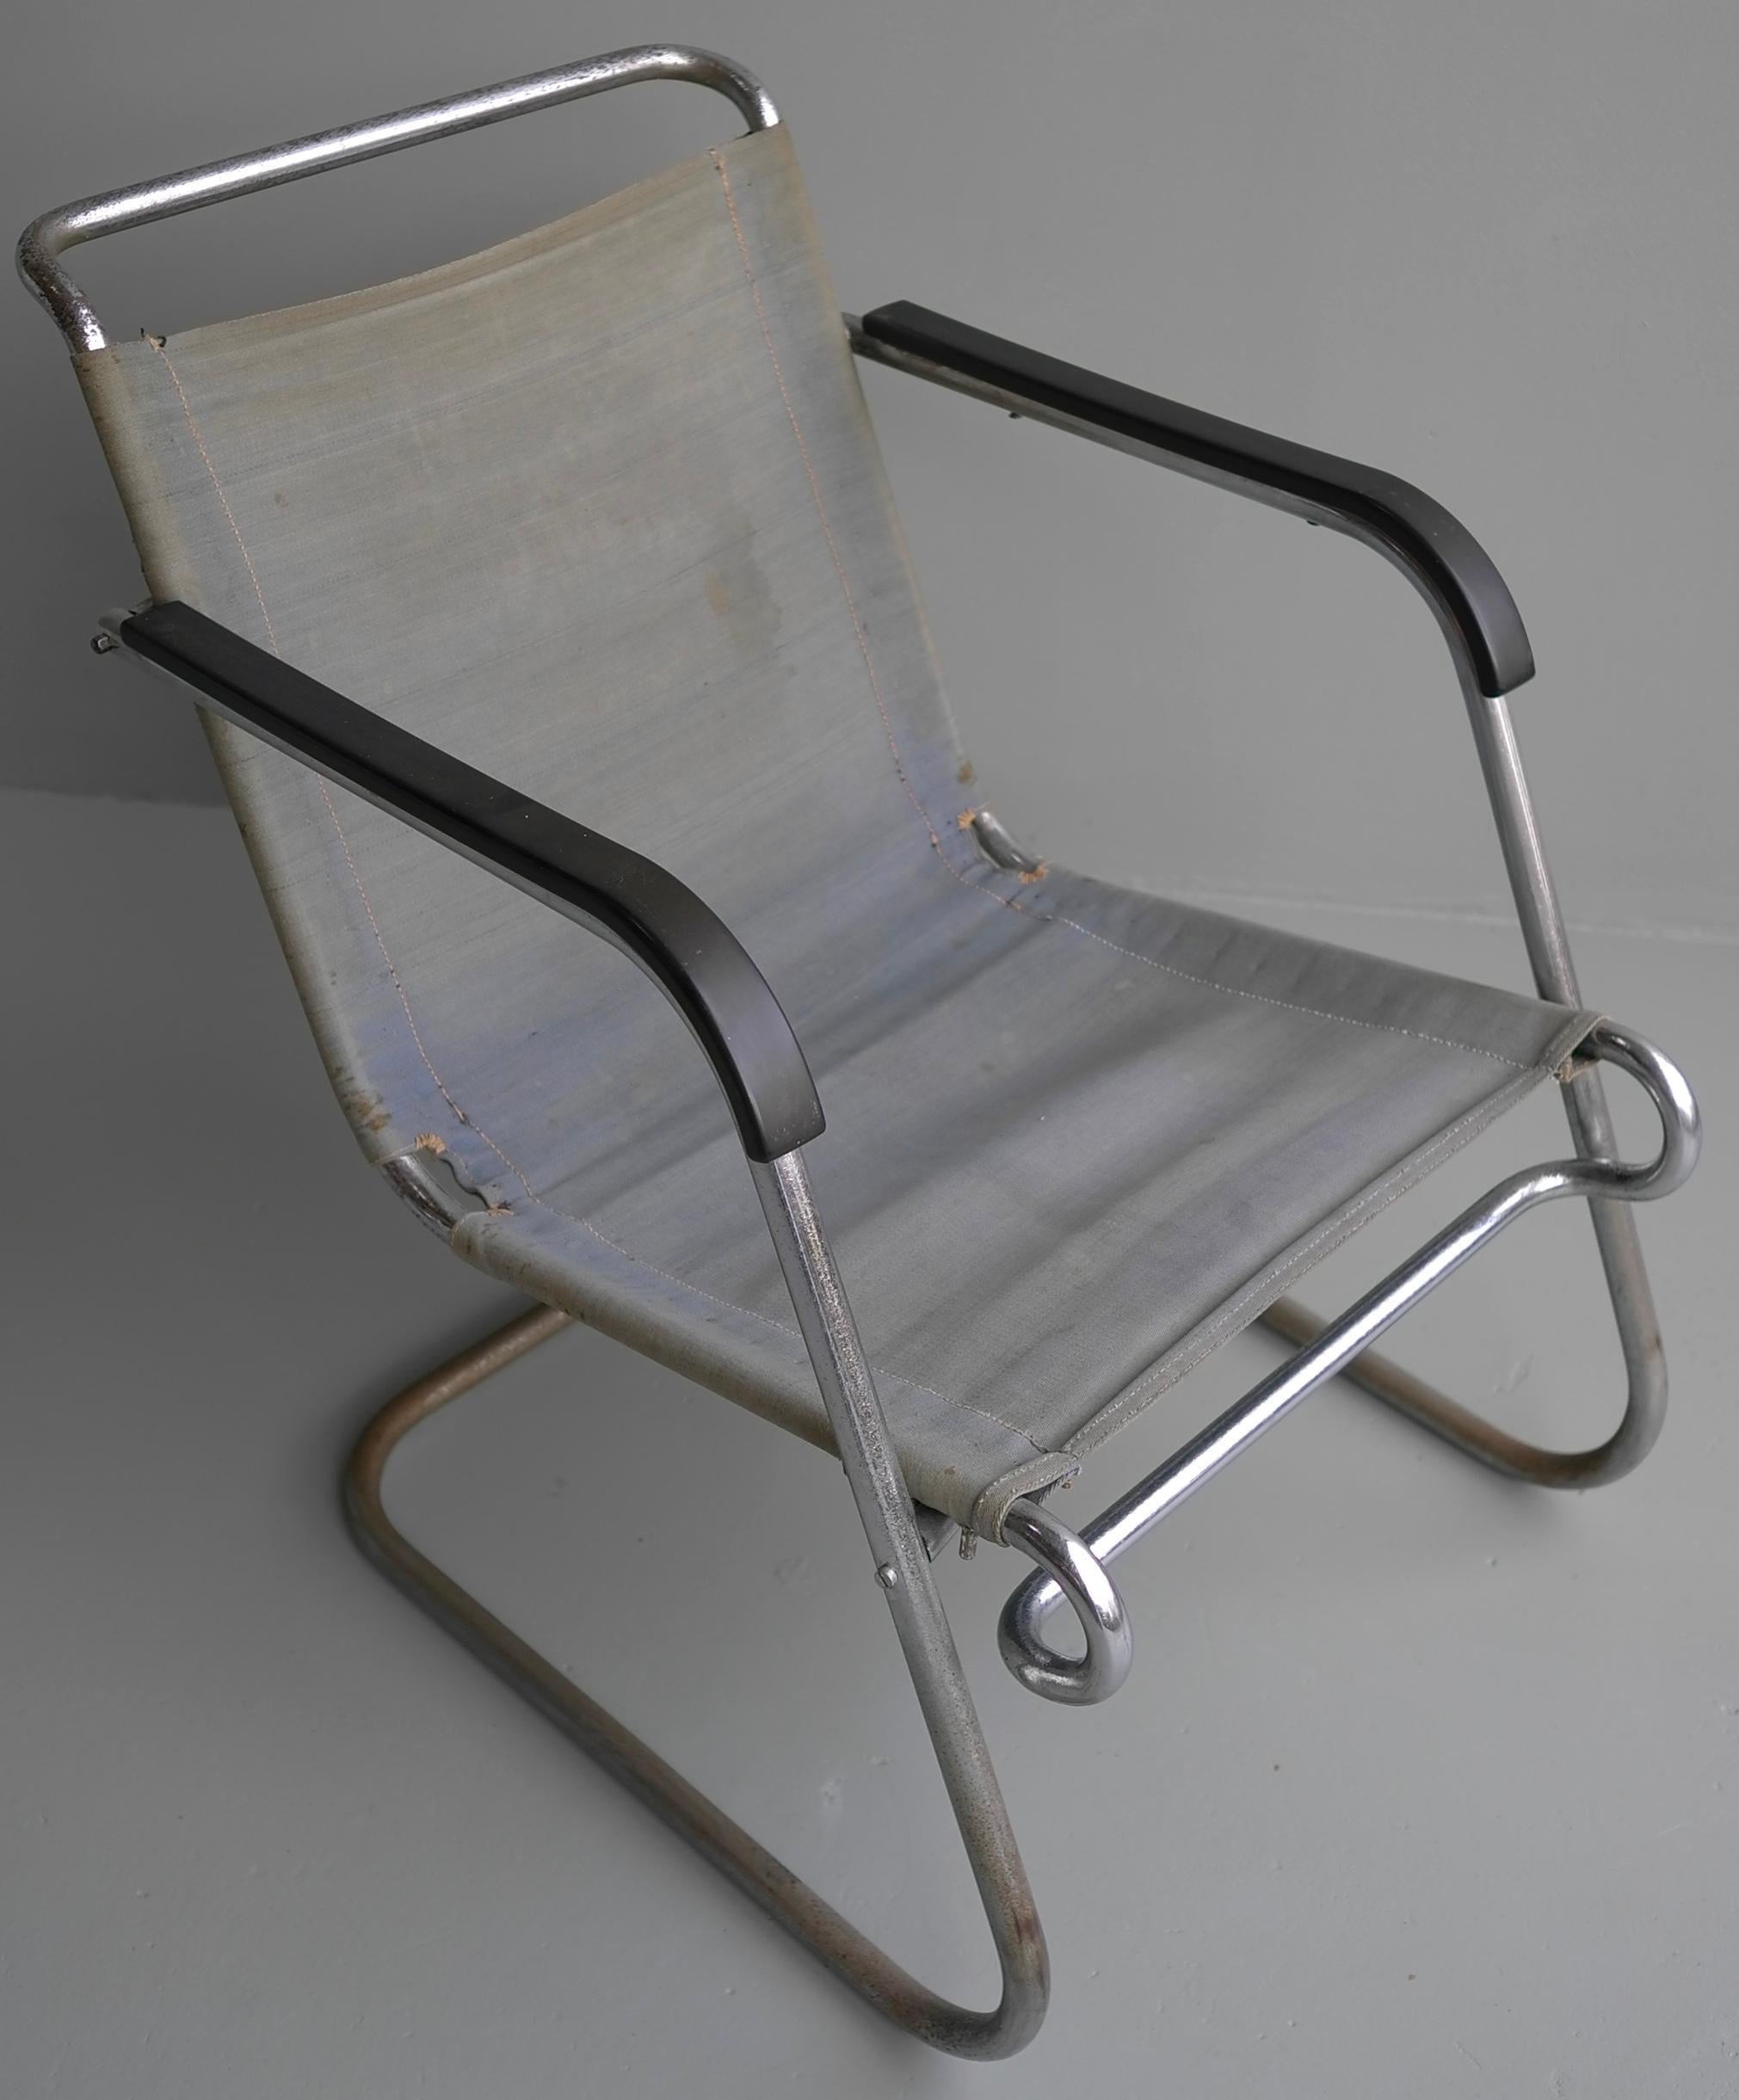 Seltener Marcel Breuer BT-24 Sessel von Metz & Co. Thonet, 1931
Dieser Stuhl hat ein verchromtes Stahlgestell, Bakelit-Armlehnen und noch den originalen blauen Eisengarn-Bezug.
Ein exakt gleiches Exemplar, jedoch in weniger gutem Zustand, ist in der